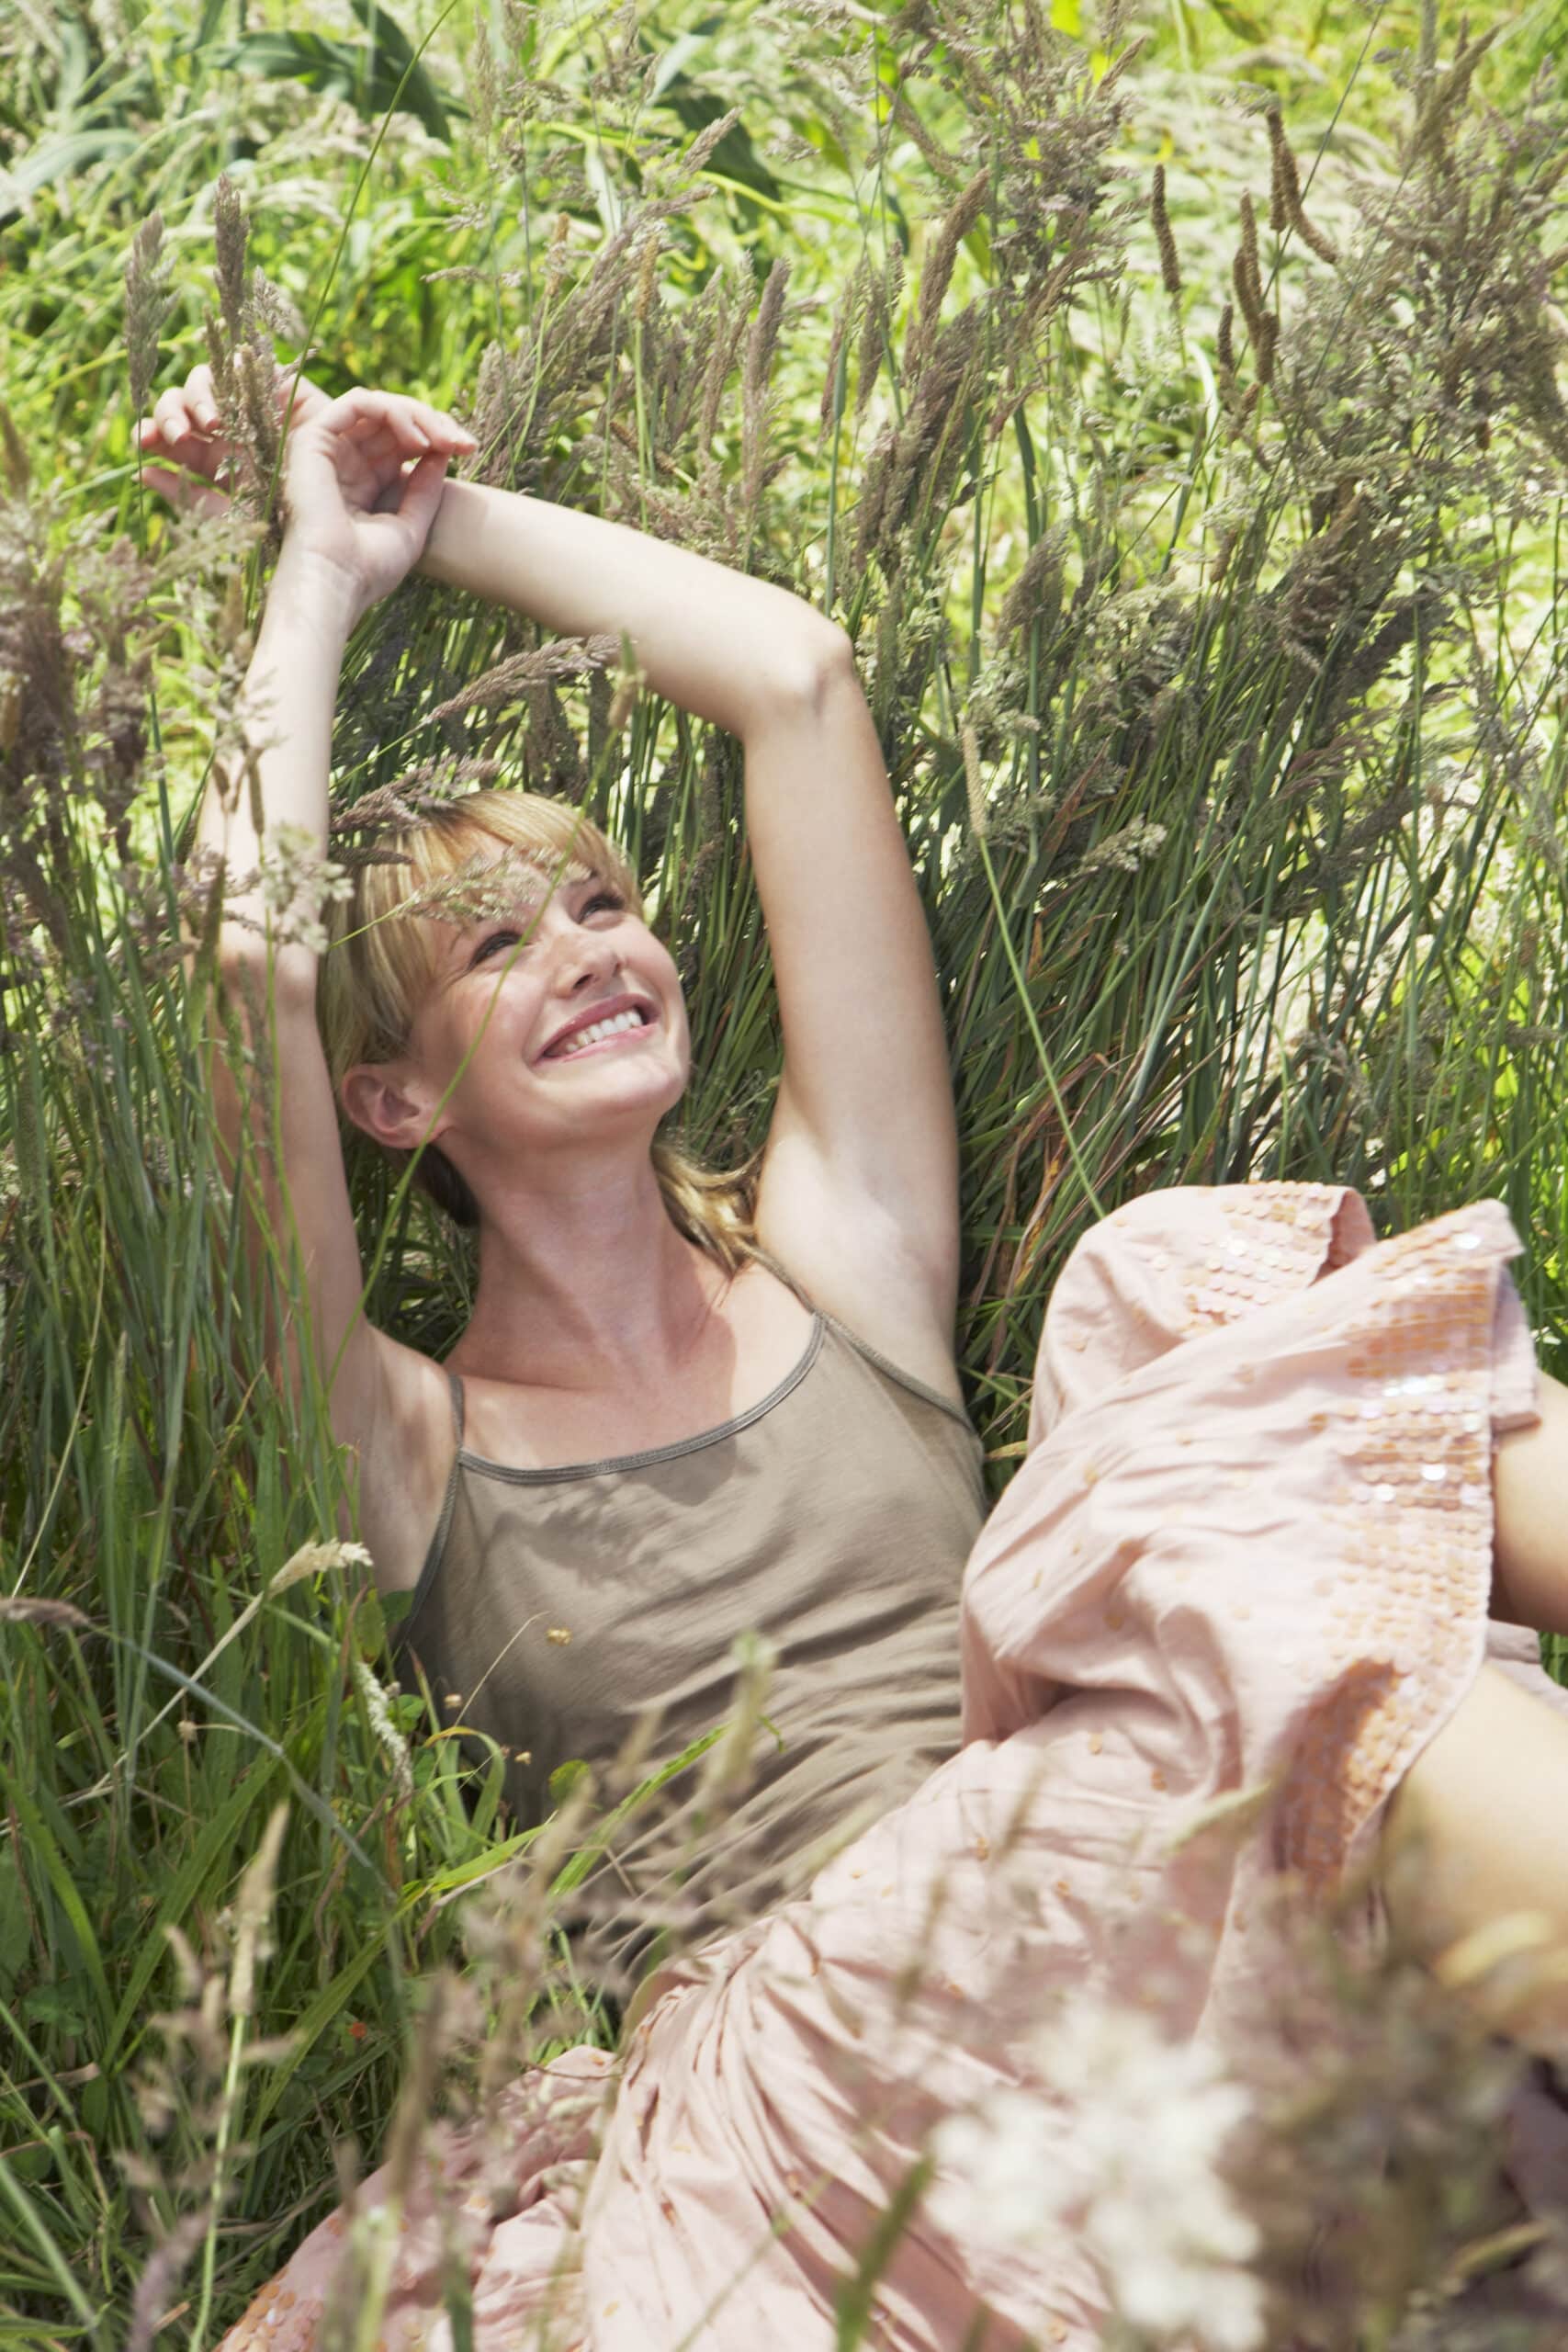 Eine fröhliche Frau in einem leichten Kleid liegt im hohen Gras, lächelt und streckt die Arme über den Kopf, umgeben von üppigem Grün. © Fotografie Tomas Rodriguez